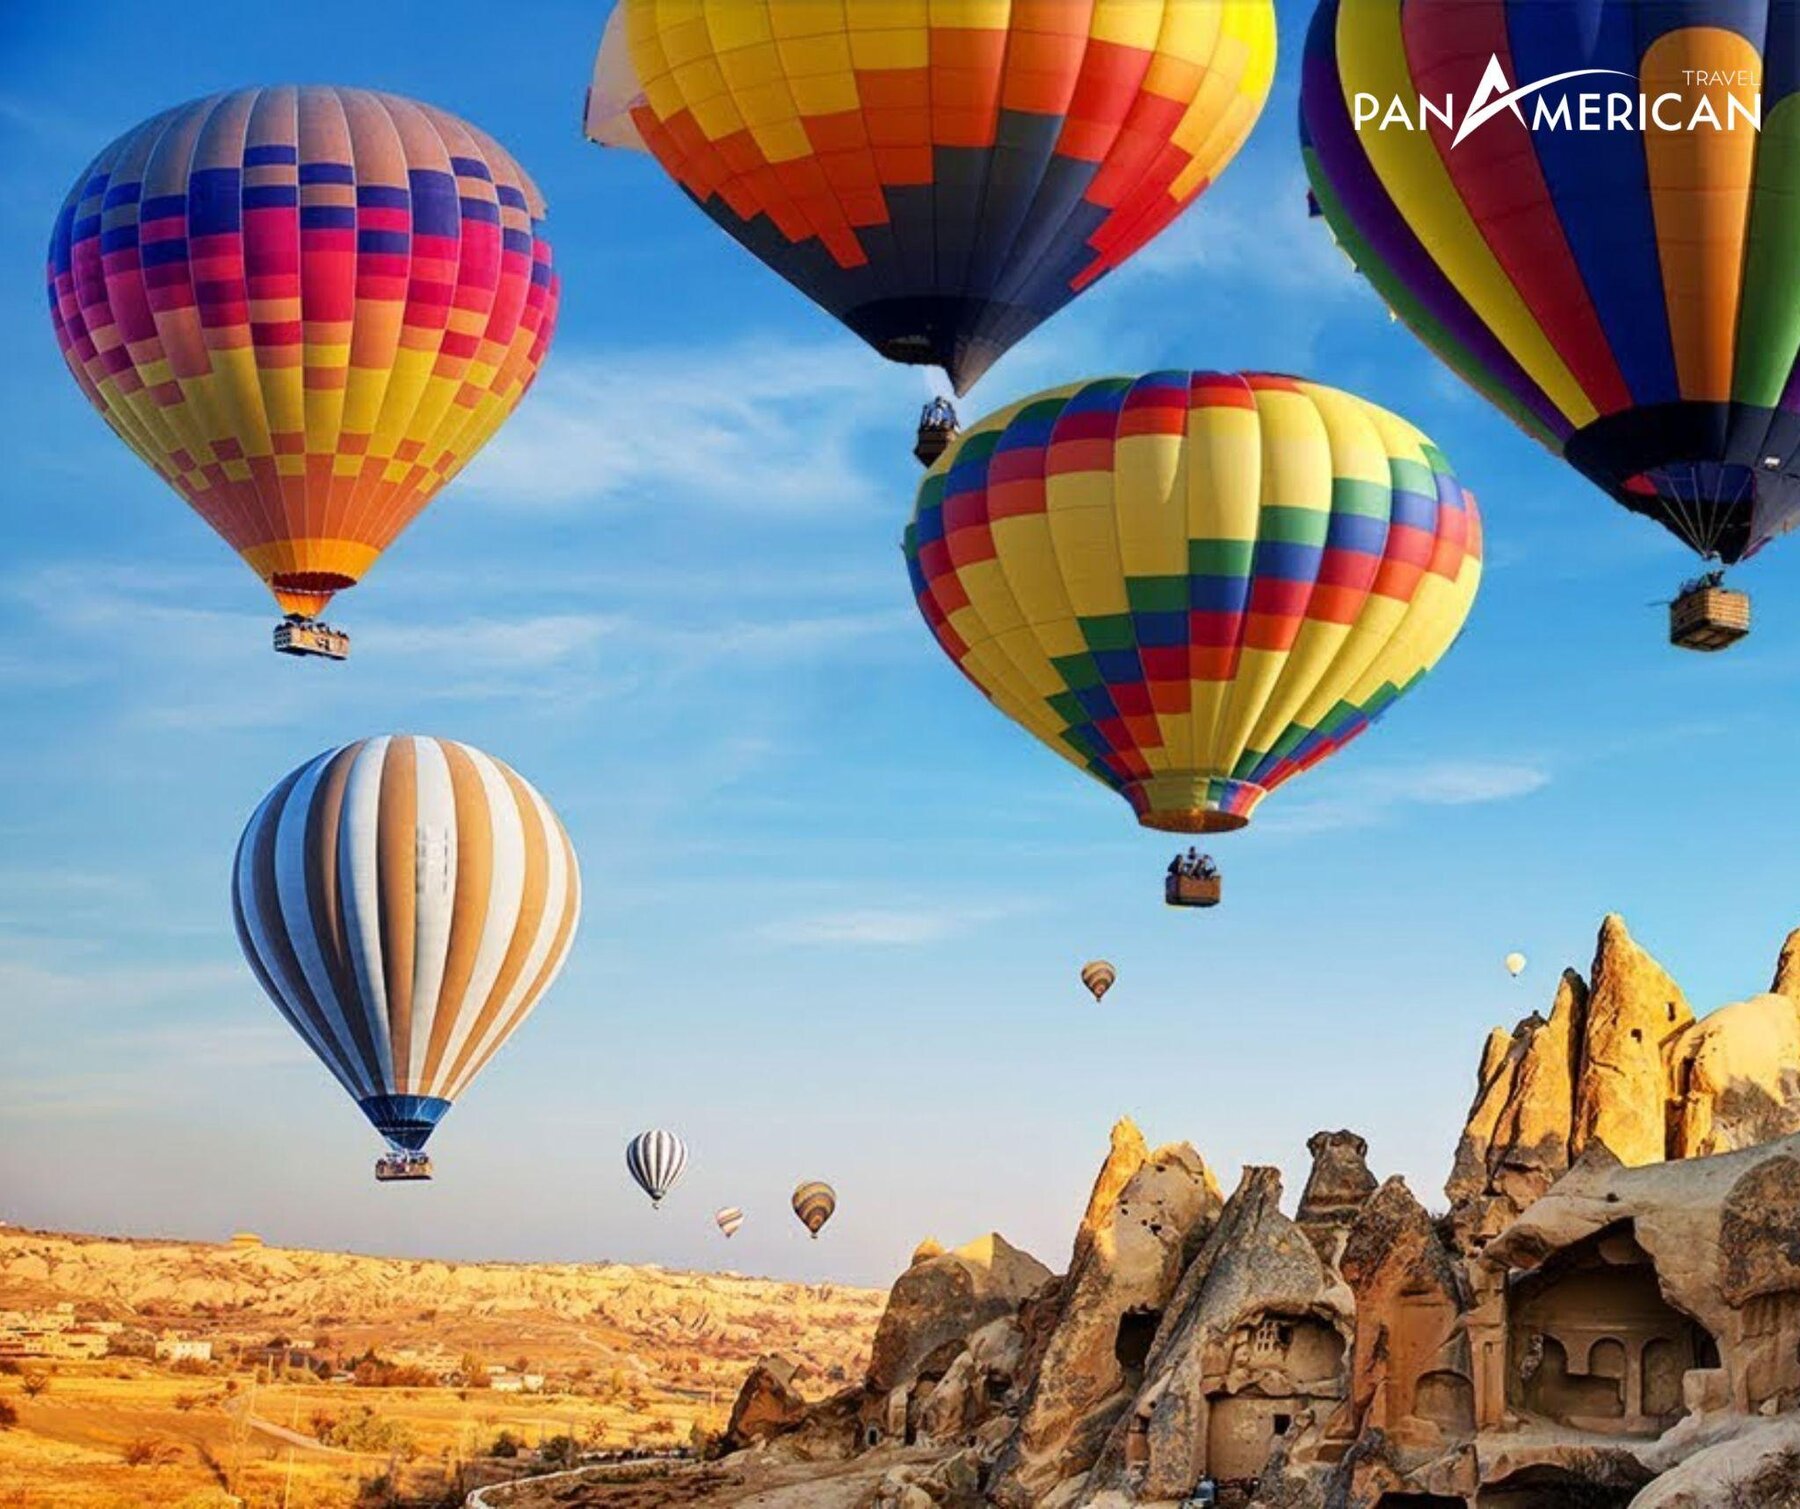 Bay khinh khí cầu trên Cappadochia là trải nghiệm hấp dẫn 